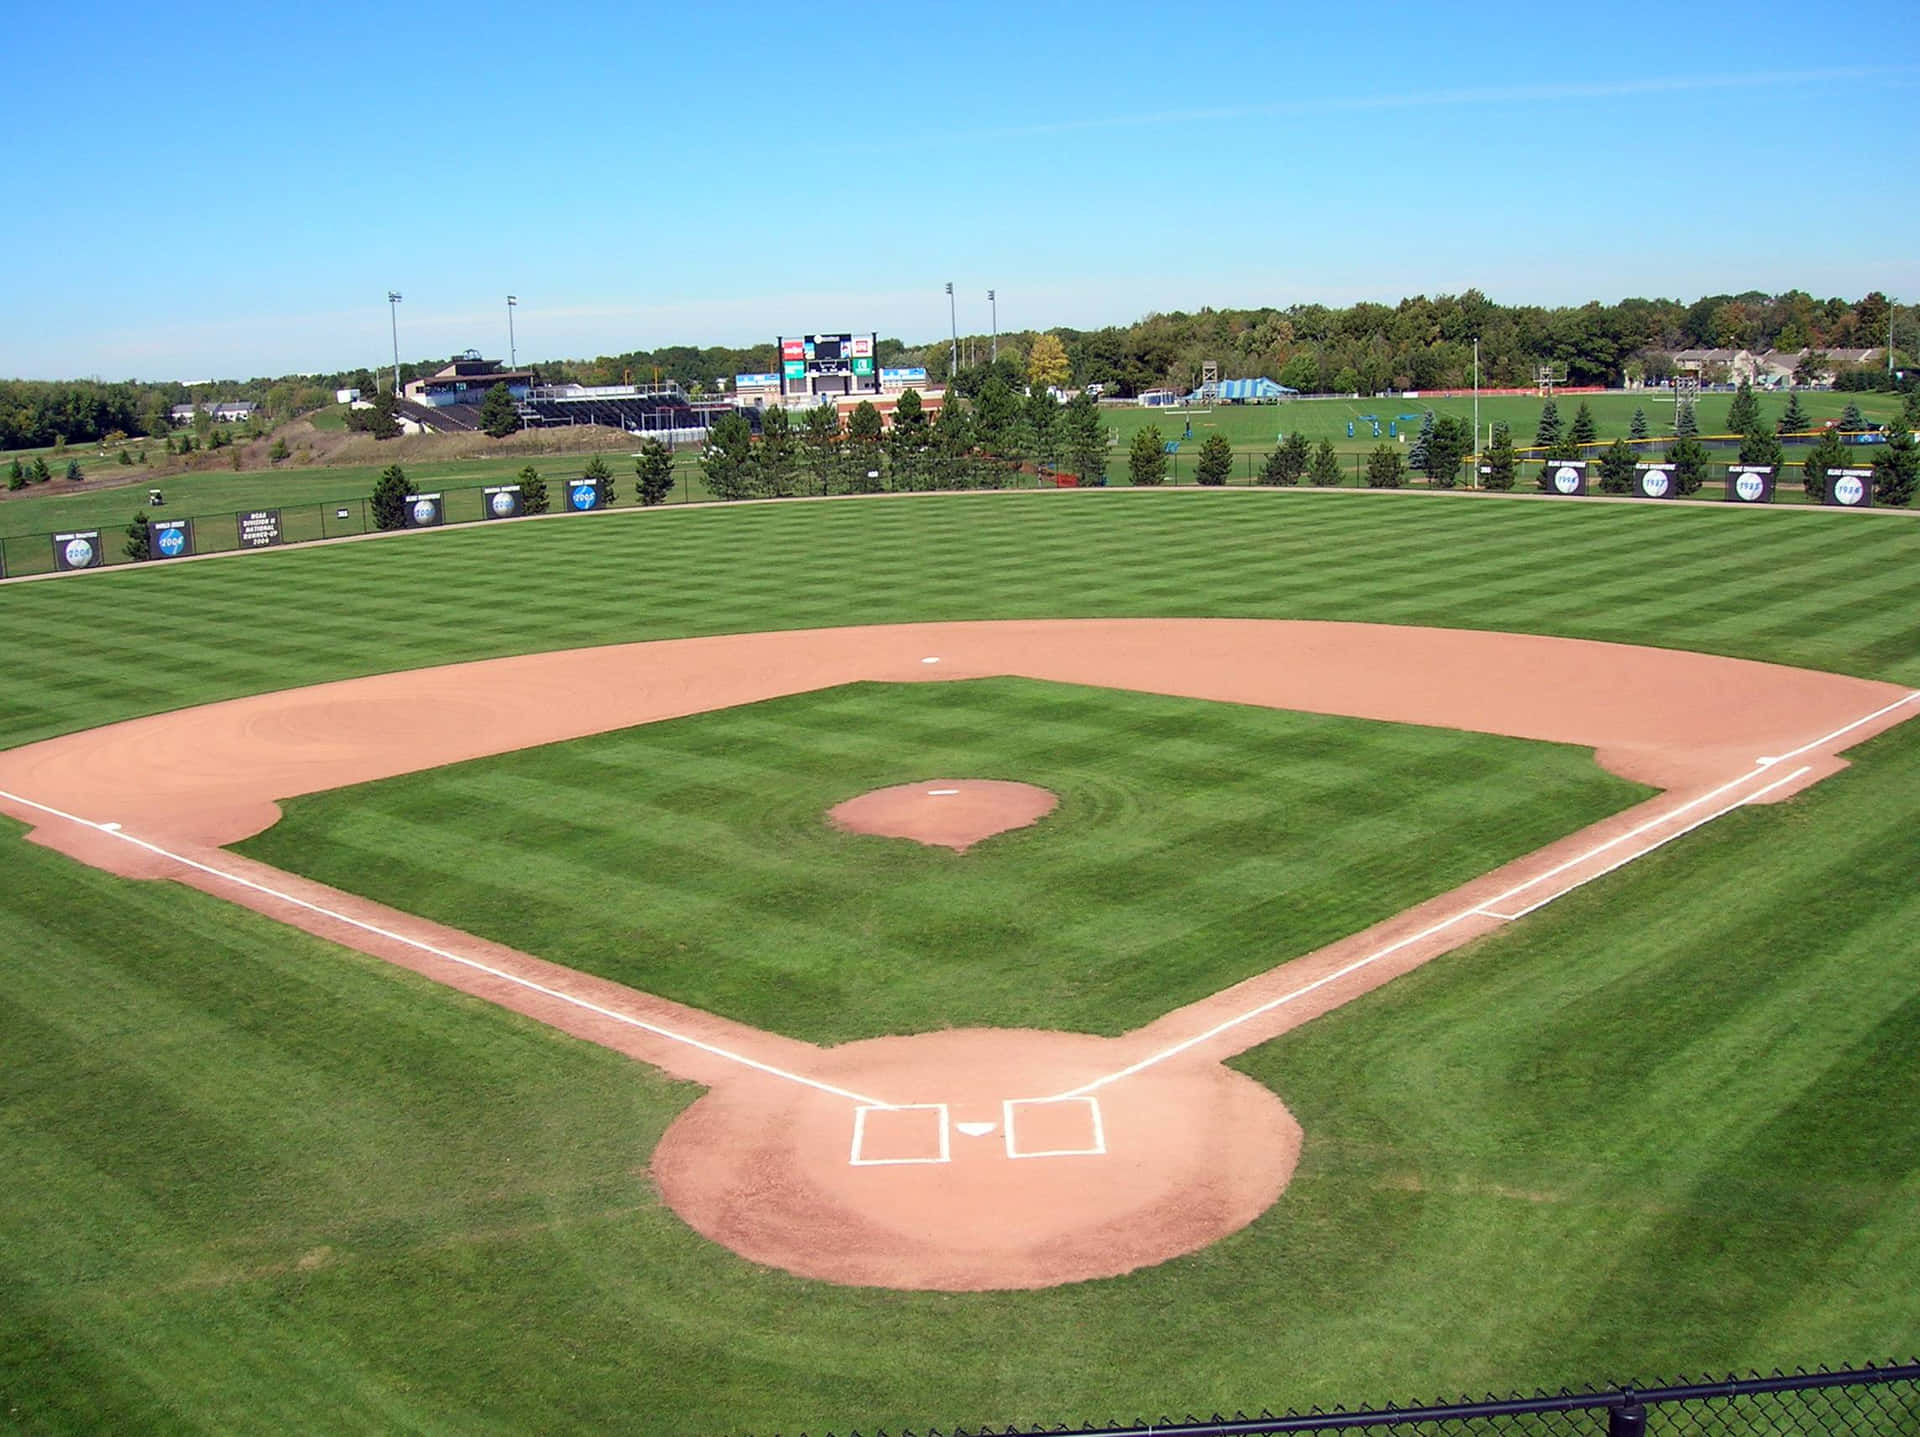 Hintergrundbildhochschul-baseballplatz In Der Landschaft